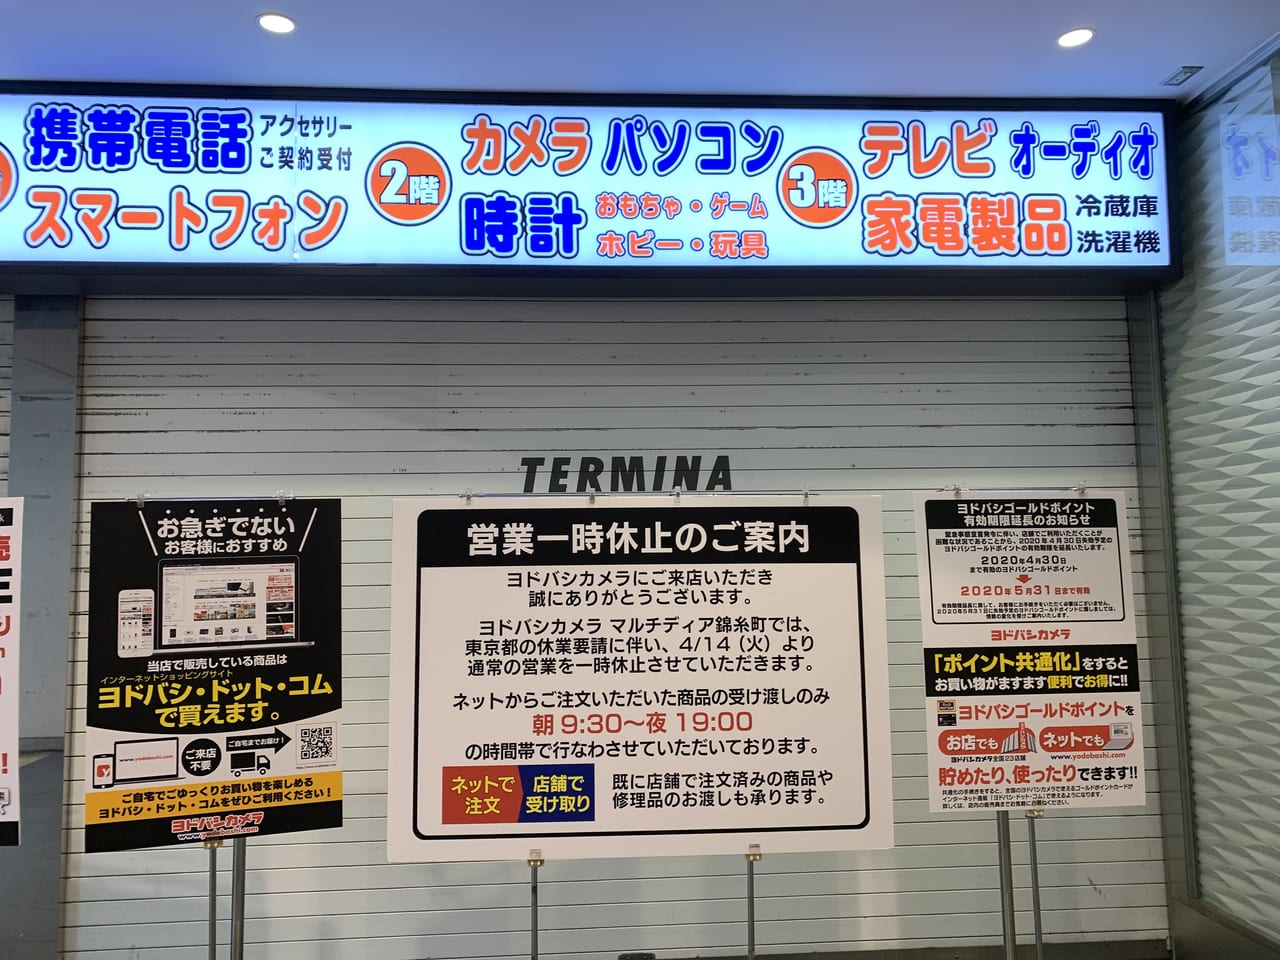 墨田区 現在のヨドバシカメラマルチメディア錦糸町の営業状況は ネットで注文 店舗で受け取りサービスもあります 号外net 墨田区